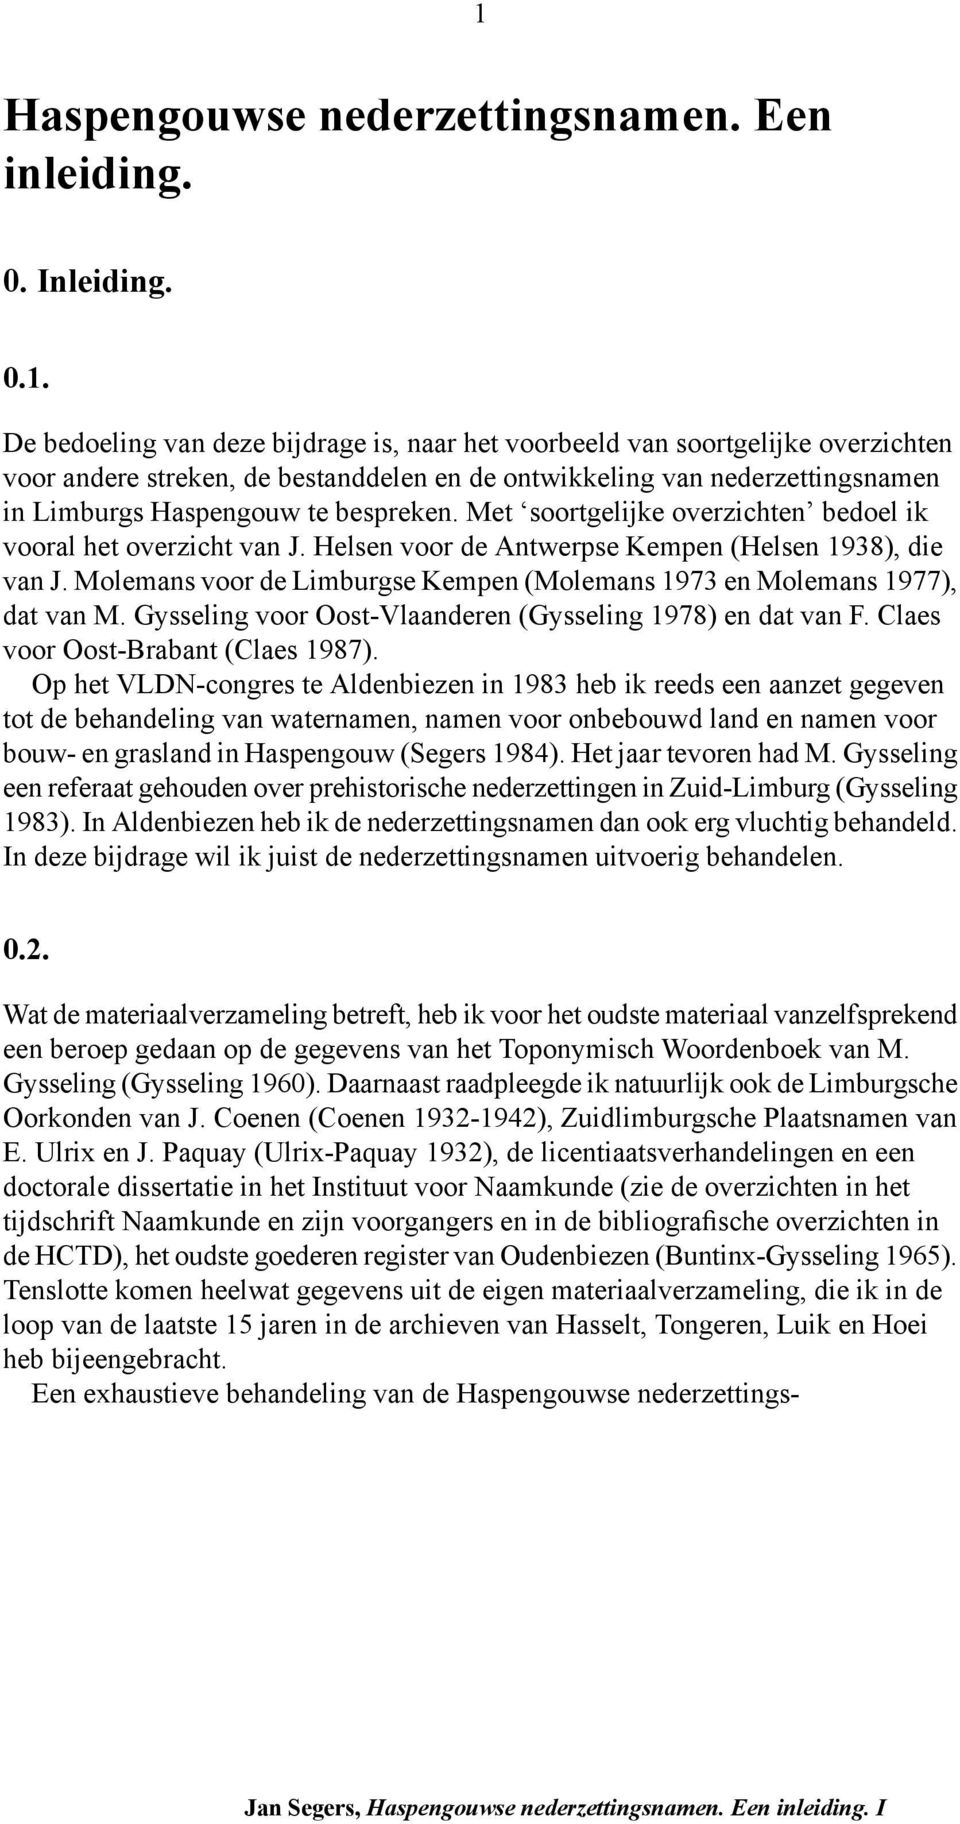 Molemans voor de Limburgse Kempen (Molemans 1973 en Molemans 1977), dat van M. Gysseling voor Oost-Vlaanderen (Gysseling 1978) en dat van F. Claes voor Oost-Brabant (Claes 1987).